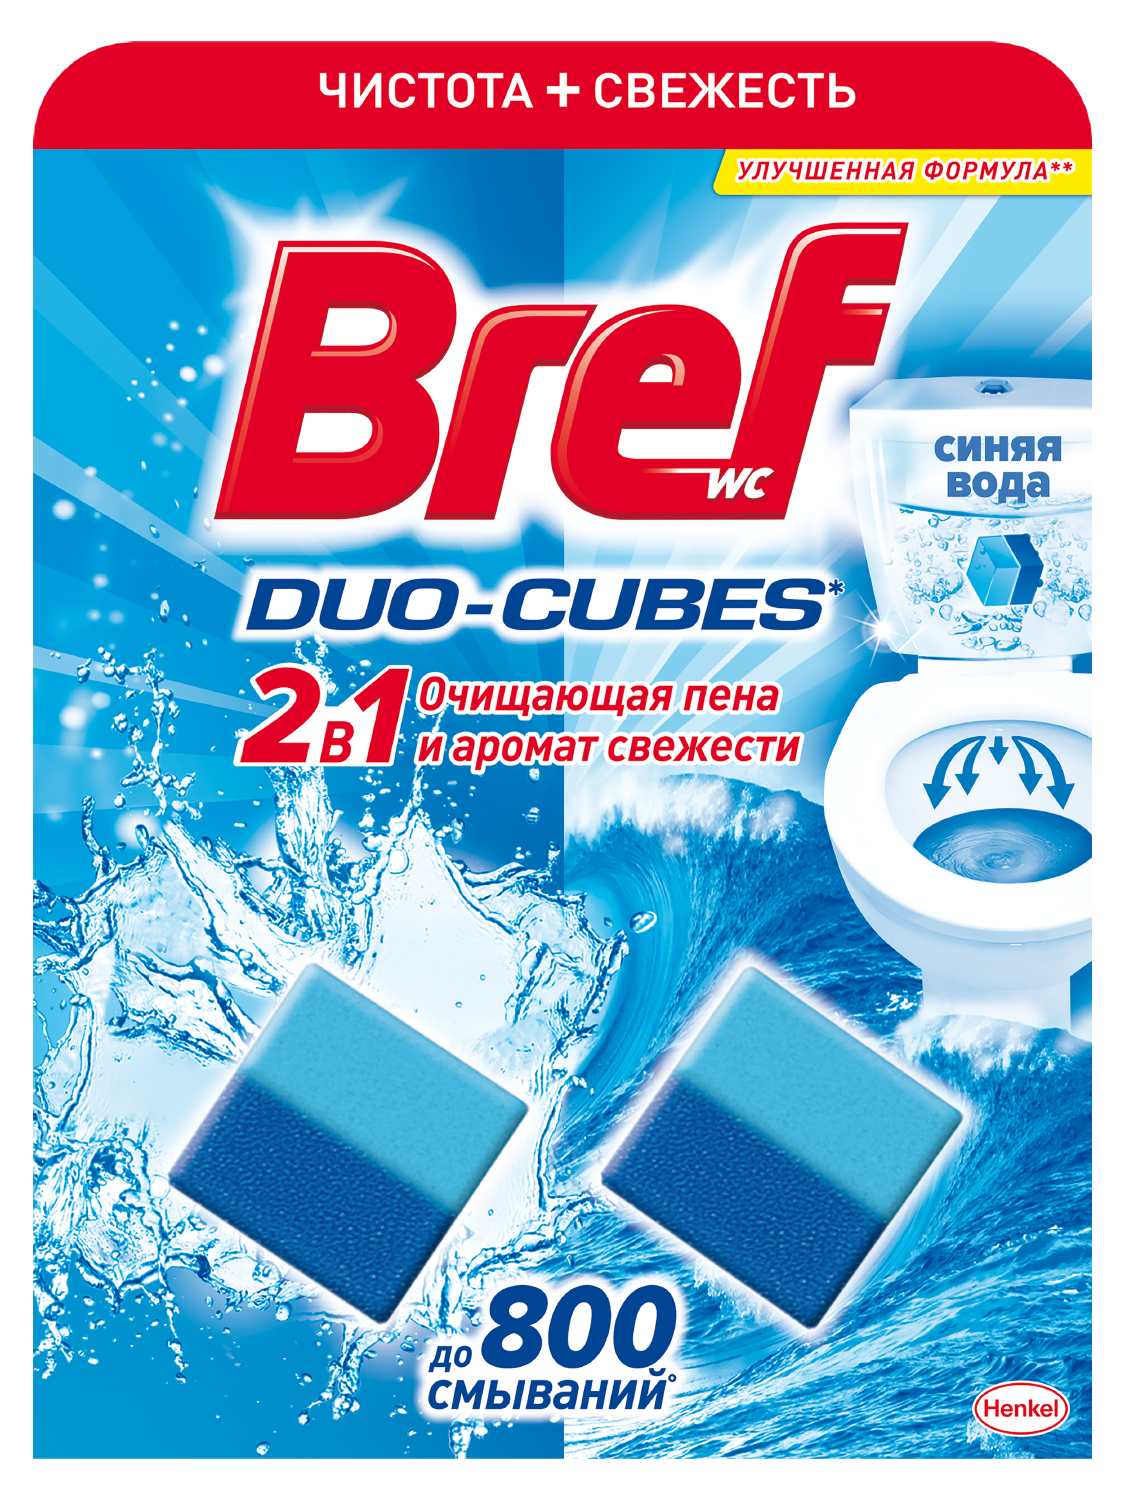 Duo cubes. Чистящие кубики для сливного бачка bref Duo-Cubes 2х50г. Чистящий унитаз bref дуо-куб 100 г. Бреф средство для унитаза отзывы. Таблетки кубики для унитаза 3х50 г, ассортимент.